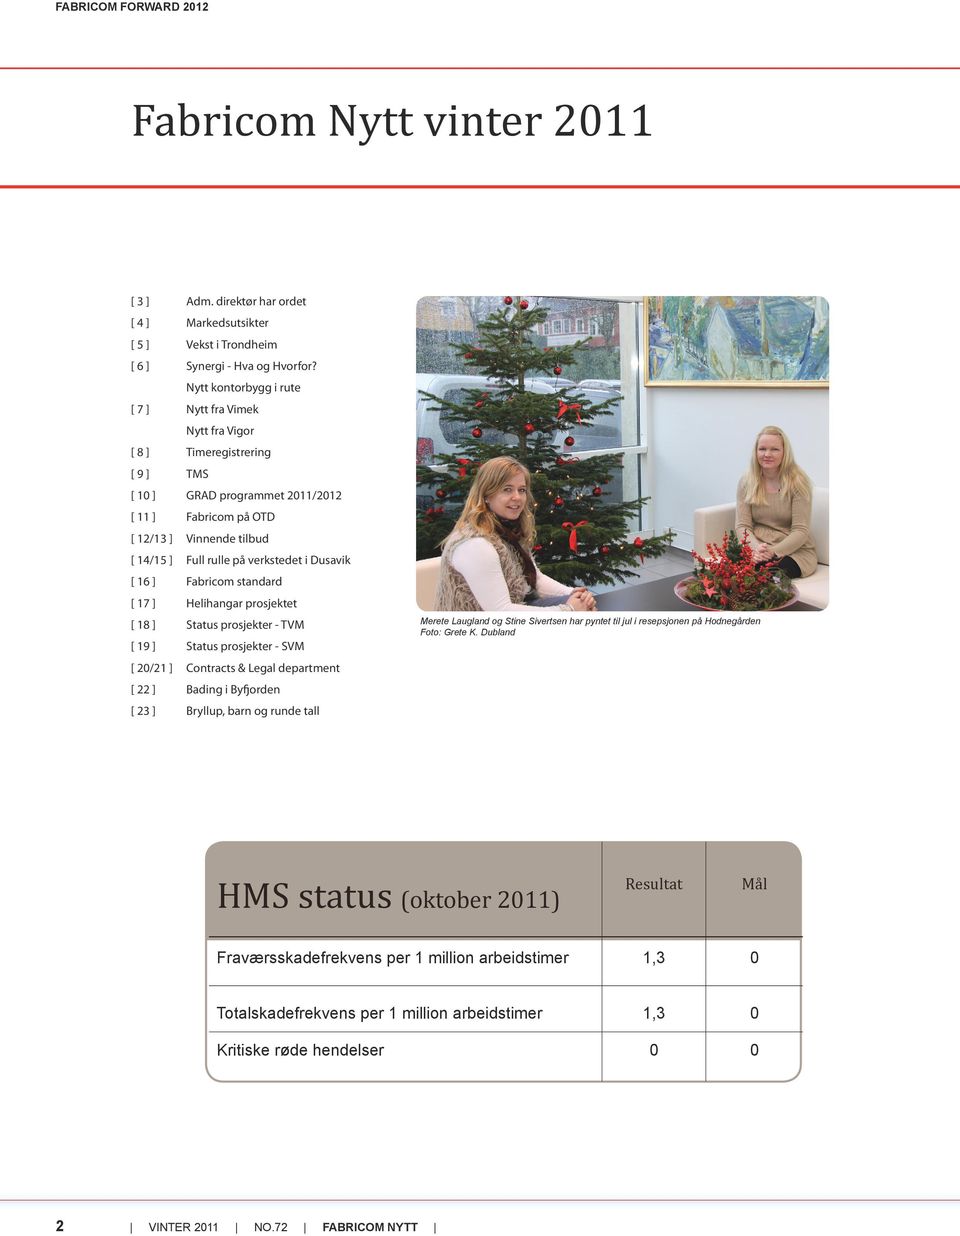 verkstedet i Dusavik [ 16 ] Fabricom standard [ 17 ] Helihangar prosjektet [ 18 ] Status prosjekter - TVM [ 19 ] Status prosjekter - SVM Merete Laugland og Stine Sivertsen har pyntet til jul i